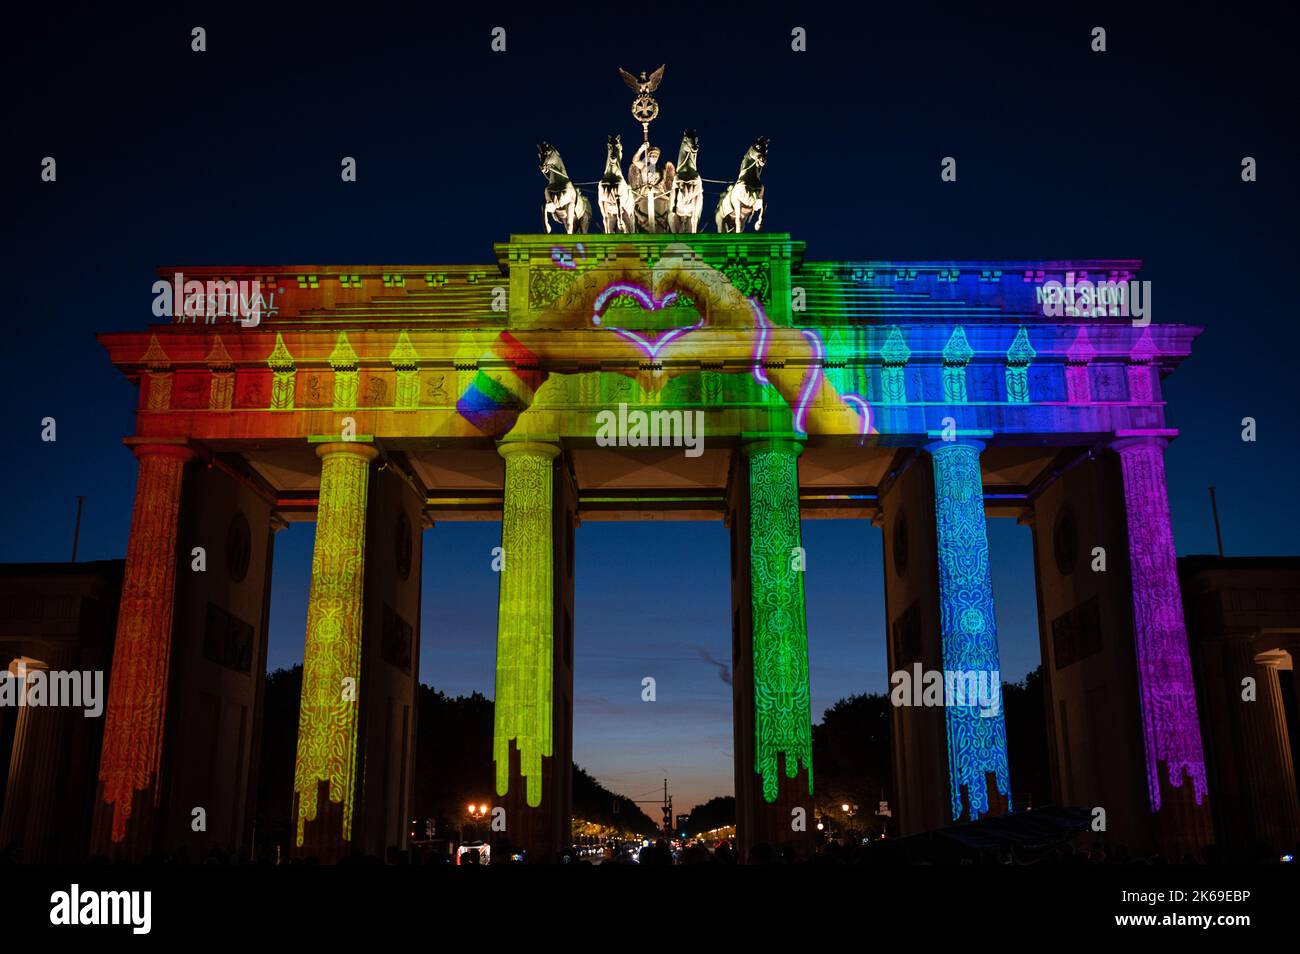 09.10.2022, Berlino, Germania, Europa - la porta di Brandeburgo illuminata nel quartiere di Mitte risplende di colori luminosi durante il Festival delle luci del 18th. Foto Stock